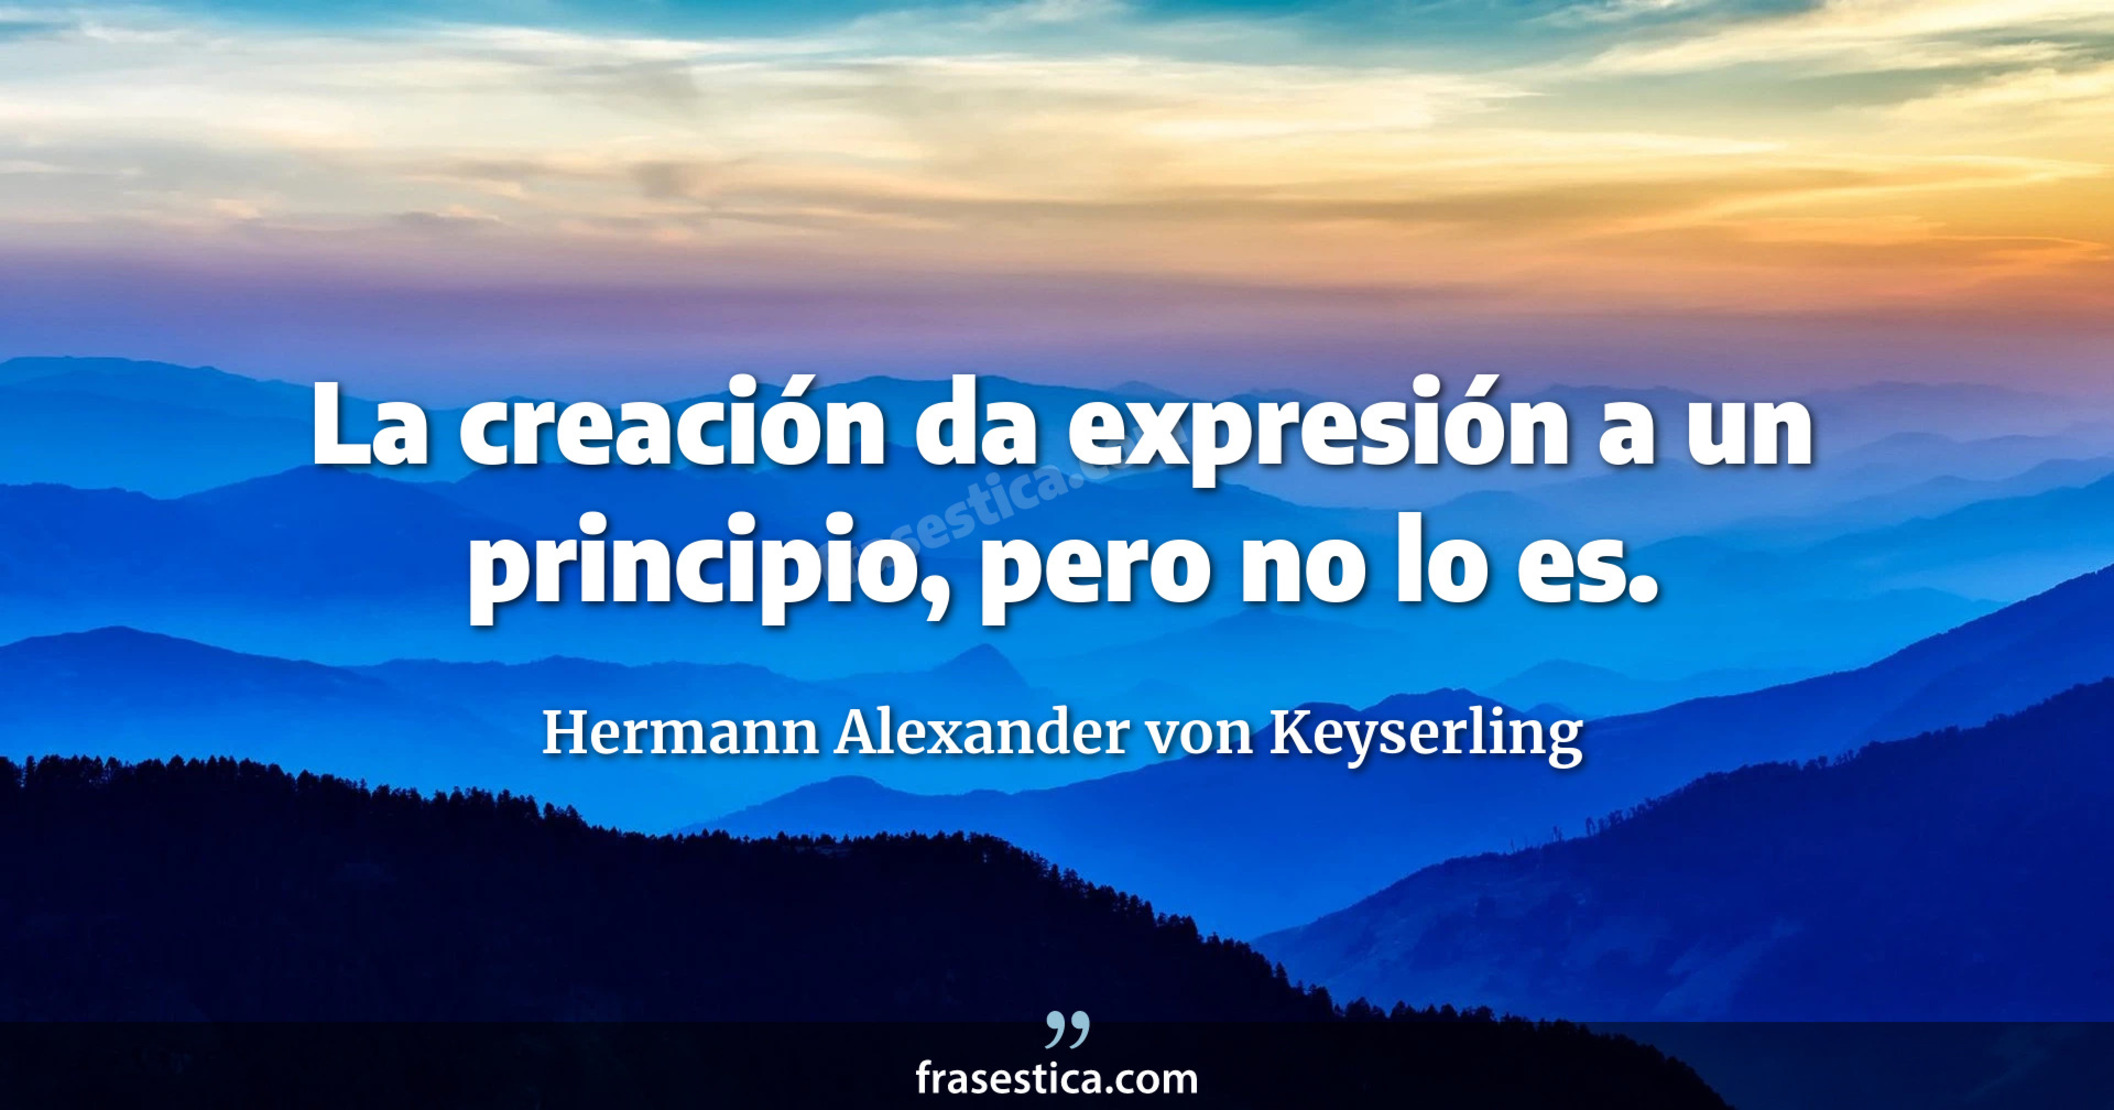 La creación da expresión a un principio, pero no lo es. - Hermann Alexander von Keyserling